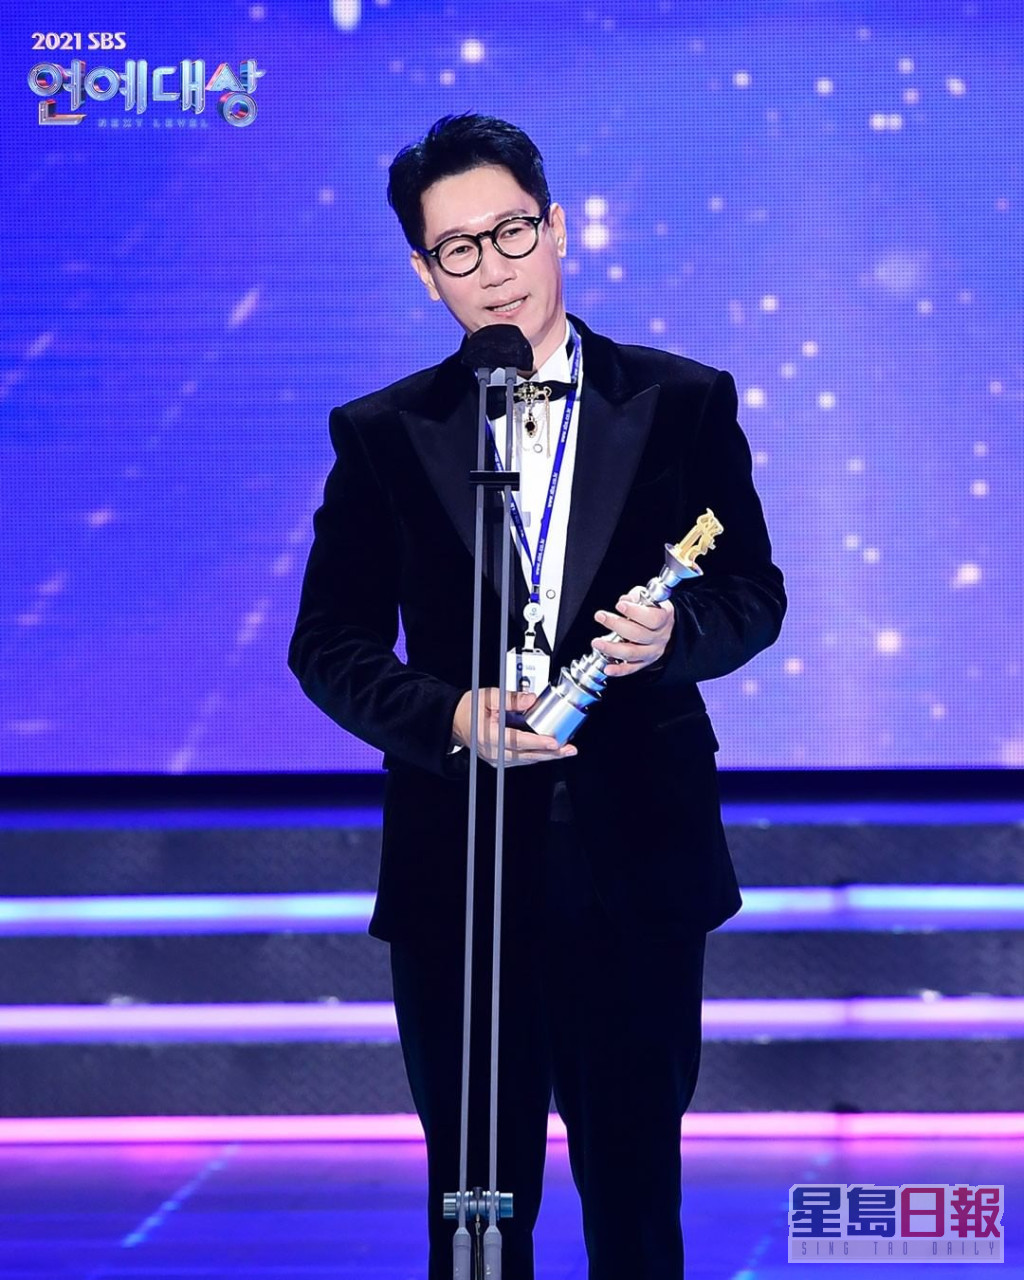 池锡辰另获「SBS名誉社员奖」。